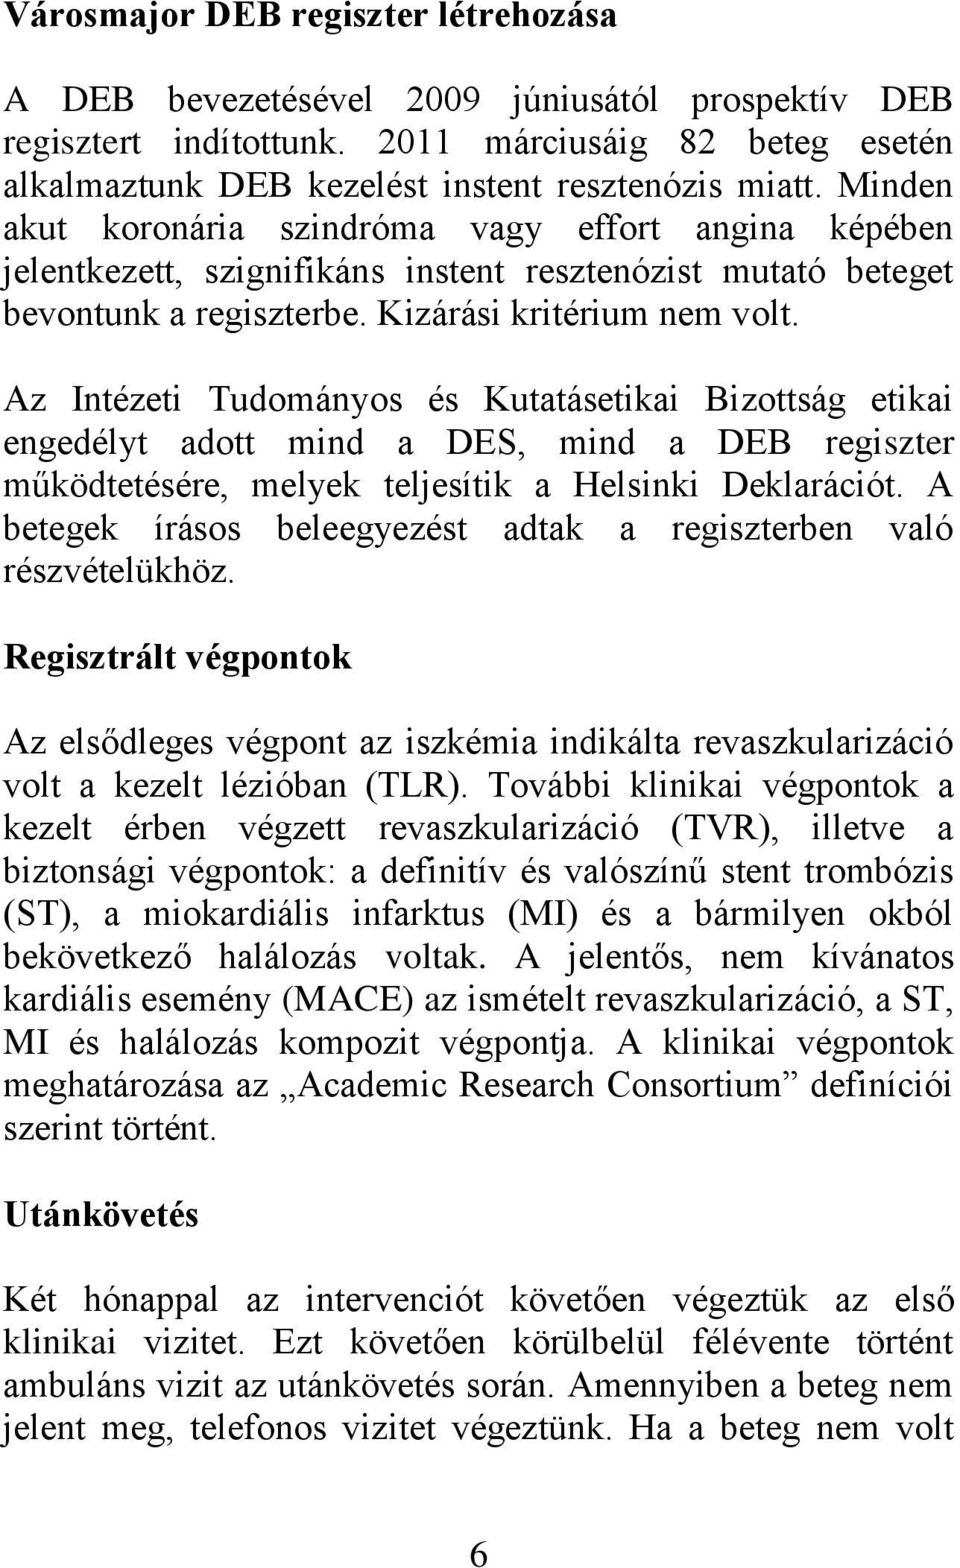 Az Intézeti Tudományos és Kutatásetikai Bizottság etikai engedélyt adott mind a DES, mind a DEB regiszter működtetésére, melyek teljesítik a Helsinki Deklarációt.